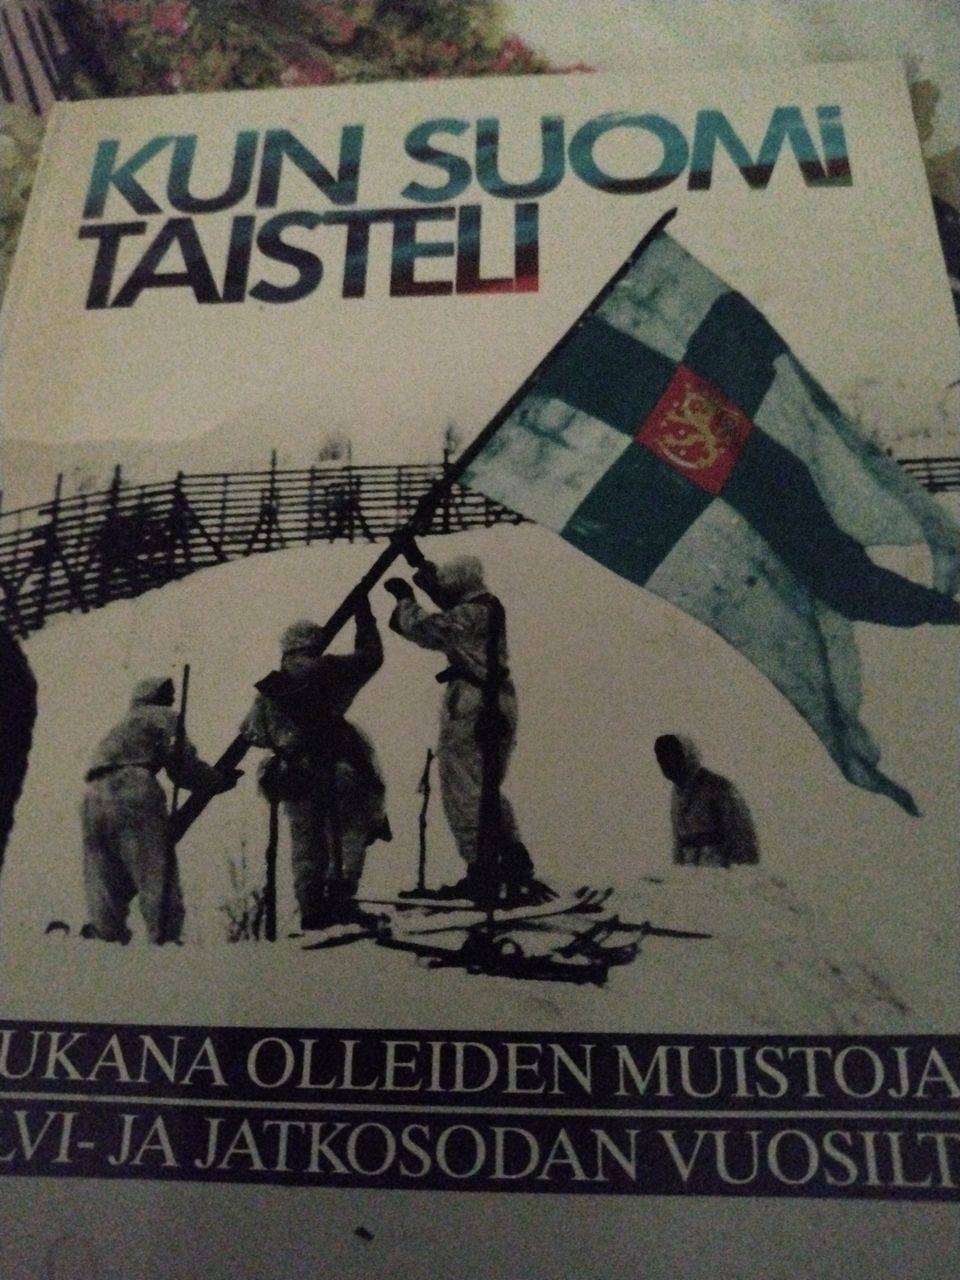 Kun Suomi taisteli. Mukana olleiden muistoja talvi-ja jatkosodan vuosilta